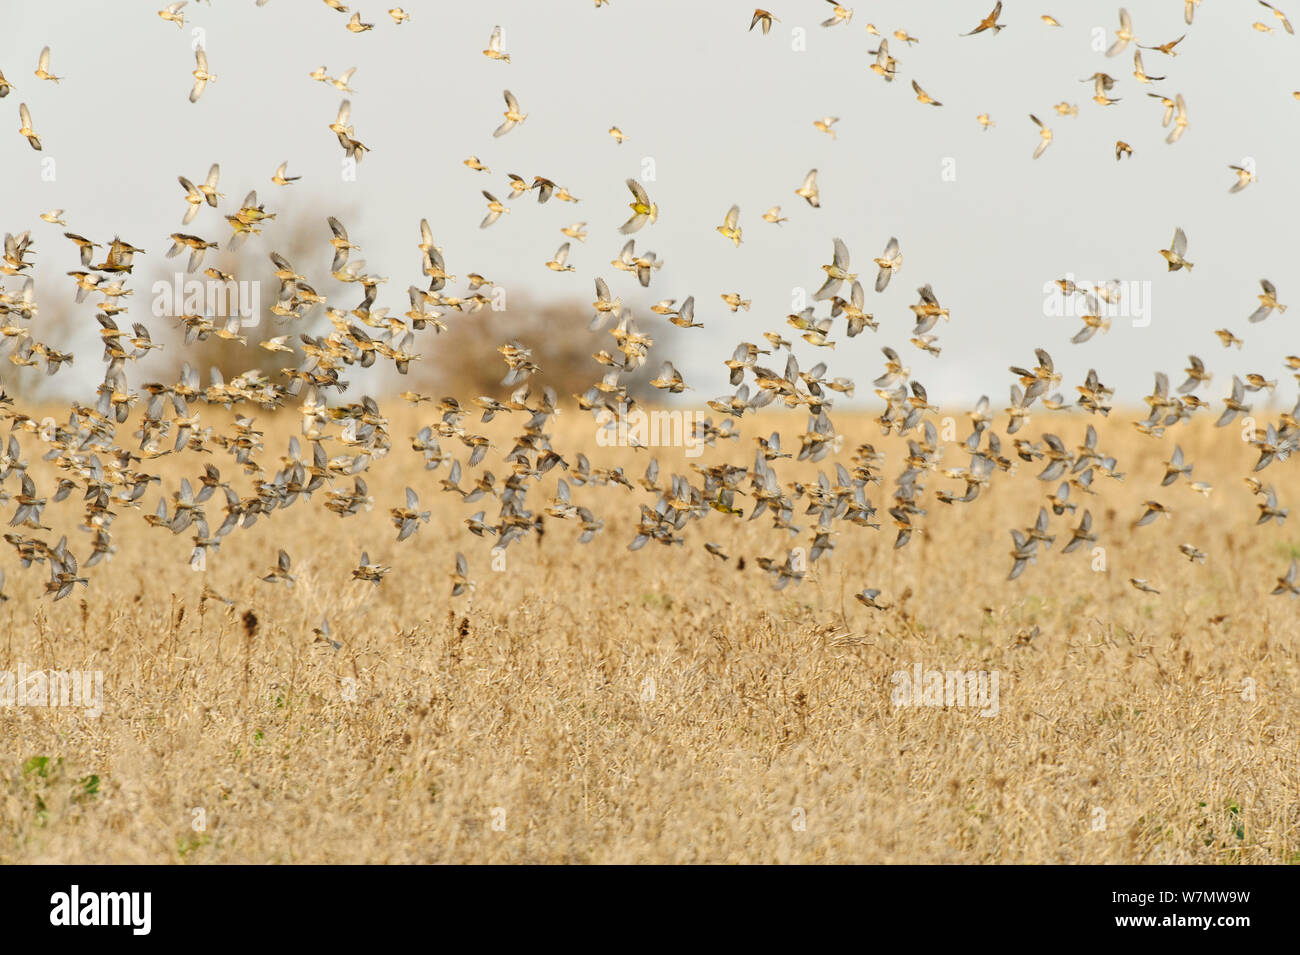 Herde Hänflinge (Carduelis cannabina) fliegen nach der Fütterung auf Erhaltung des Ernteguts für Ackerland Vögel gewachsen, elmley Naturschutzgebiet, Kent, England, UK, Februar. Stockfoto